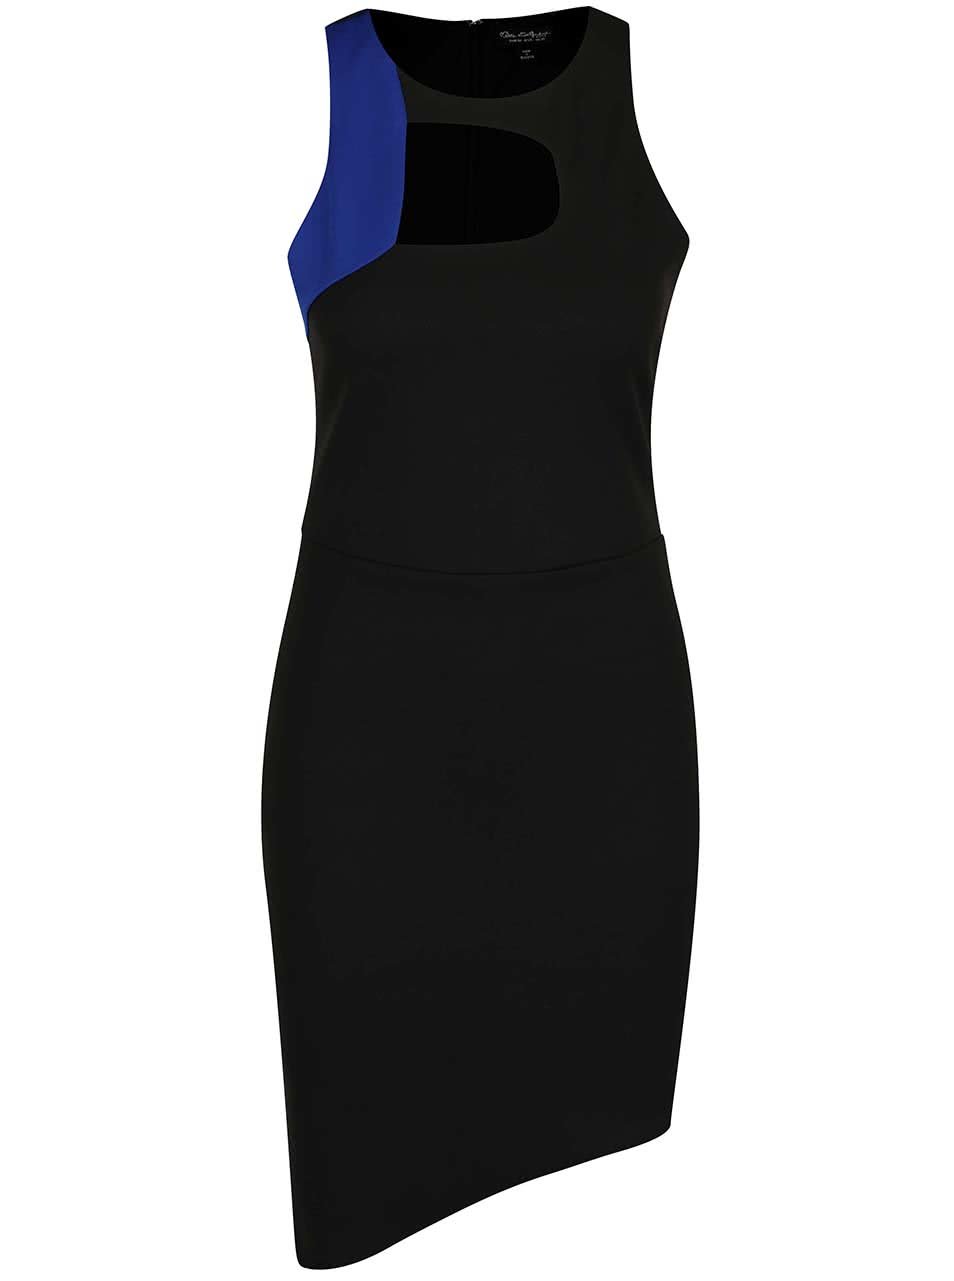 Černé šaty s modrým detailem v dekoltu Miss Selfridge